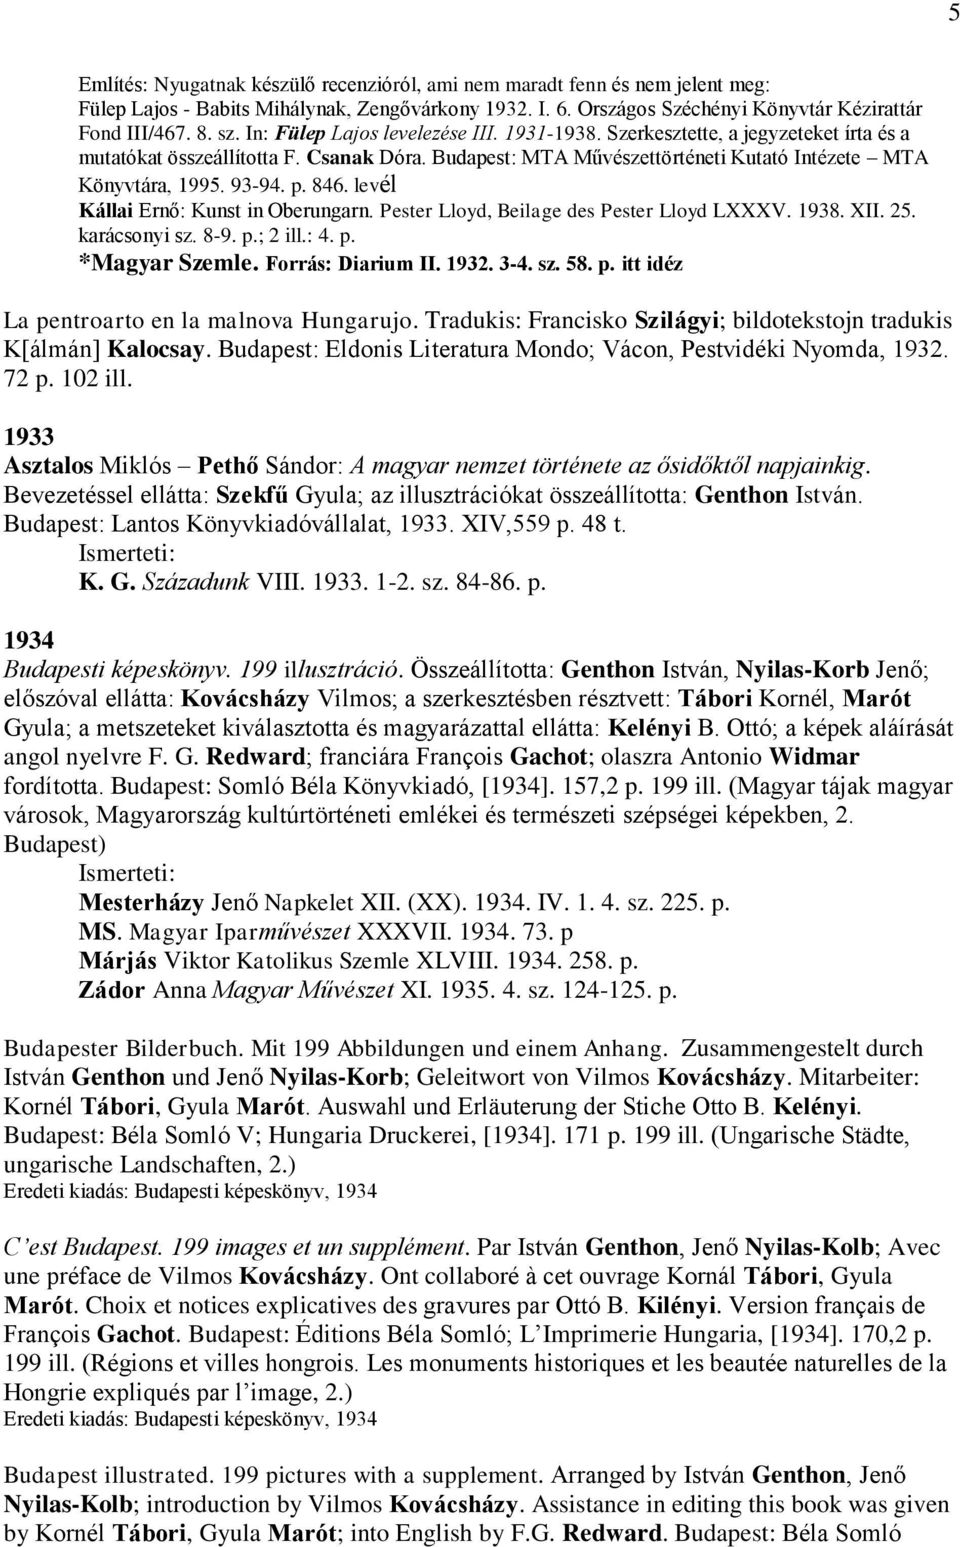 p. 846. levél Kállai Ernő: Kunst in Oberungarn. Pester Lloyd, Beilage des Pester Lloyd LXXXV. 1938. XII. 25. karácsonyi sz. 8-9. p.; 2 ill.: 4. p. *Magyar Szemle. Forrás: Diarium II. 1932. 3-4. sz. 58.